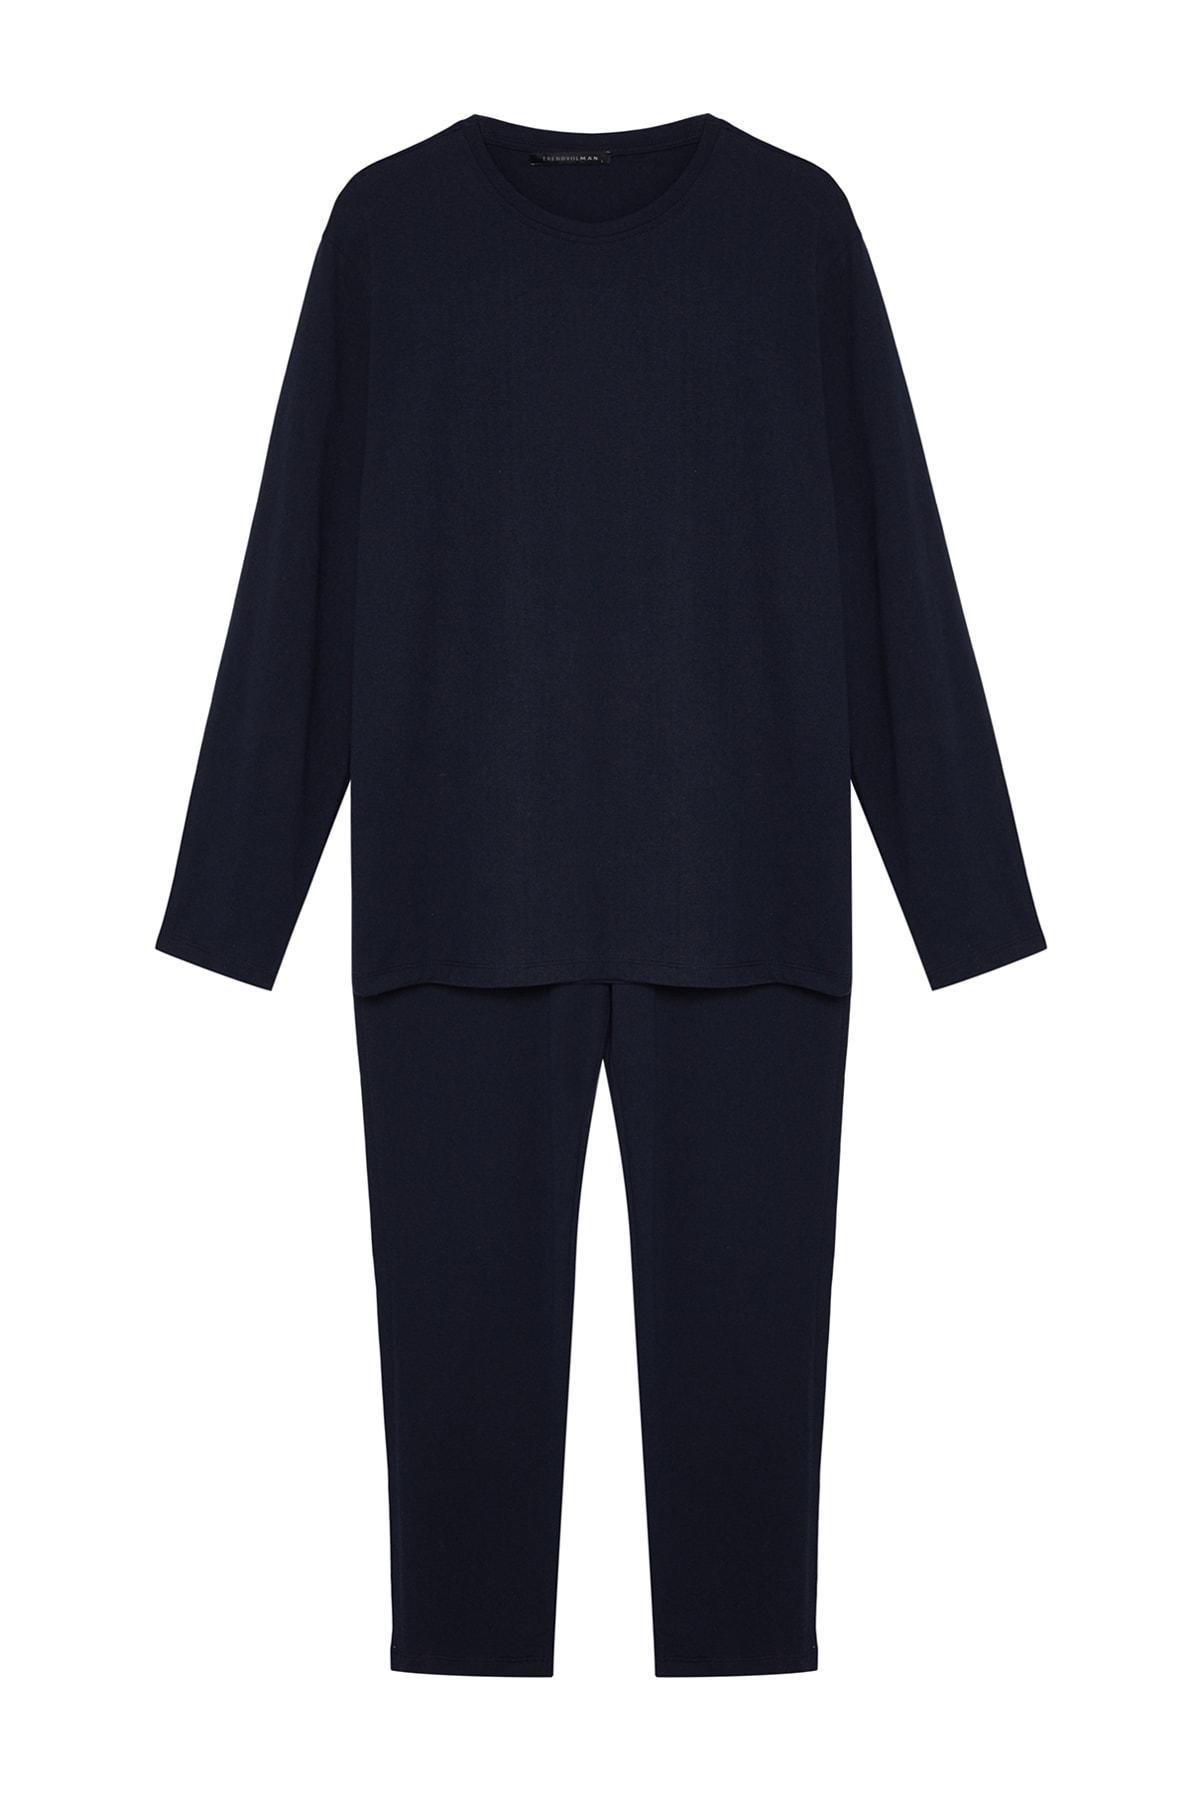 Trendyol - Navy Knitted Pyjamas Set